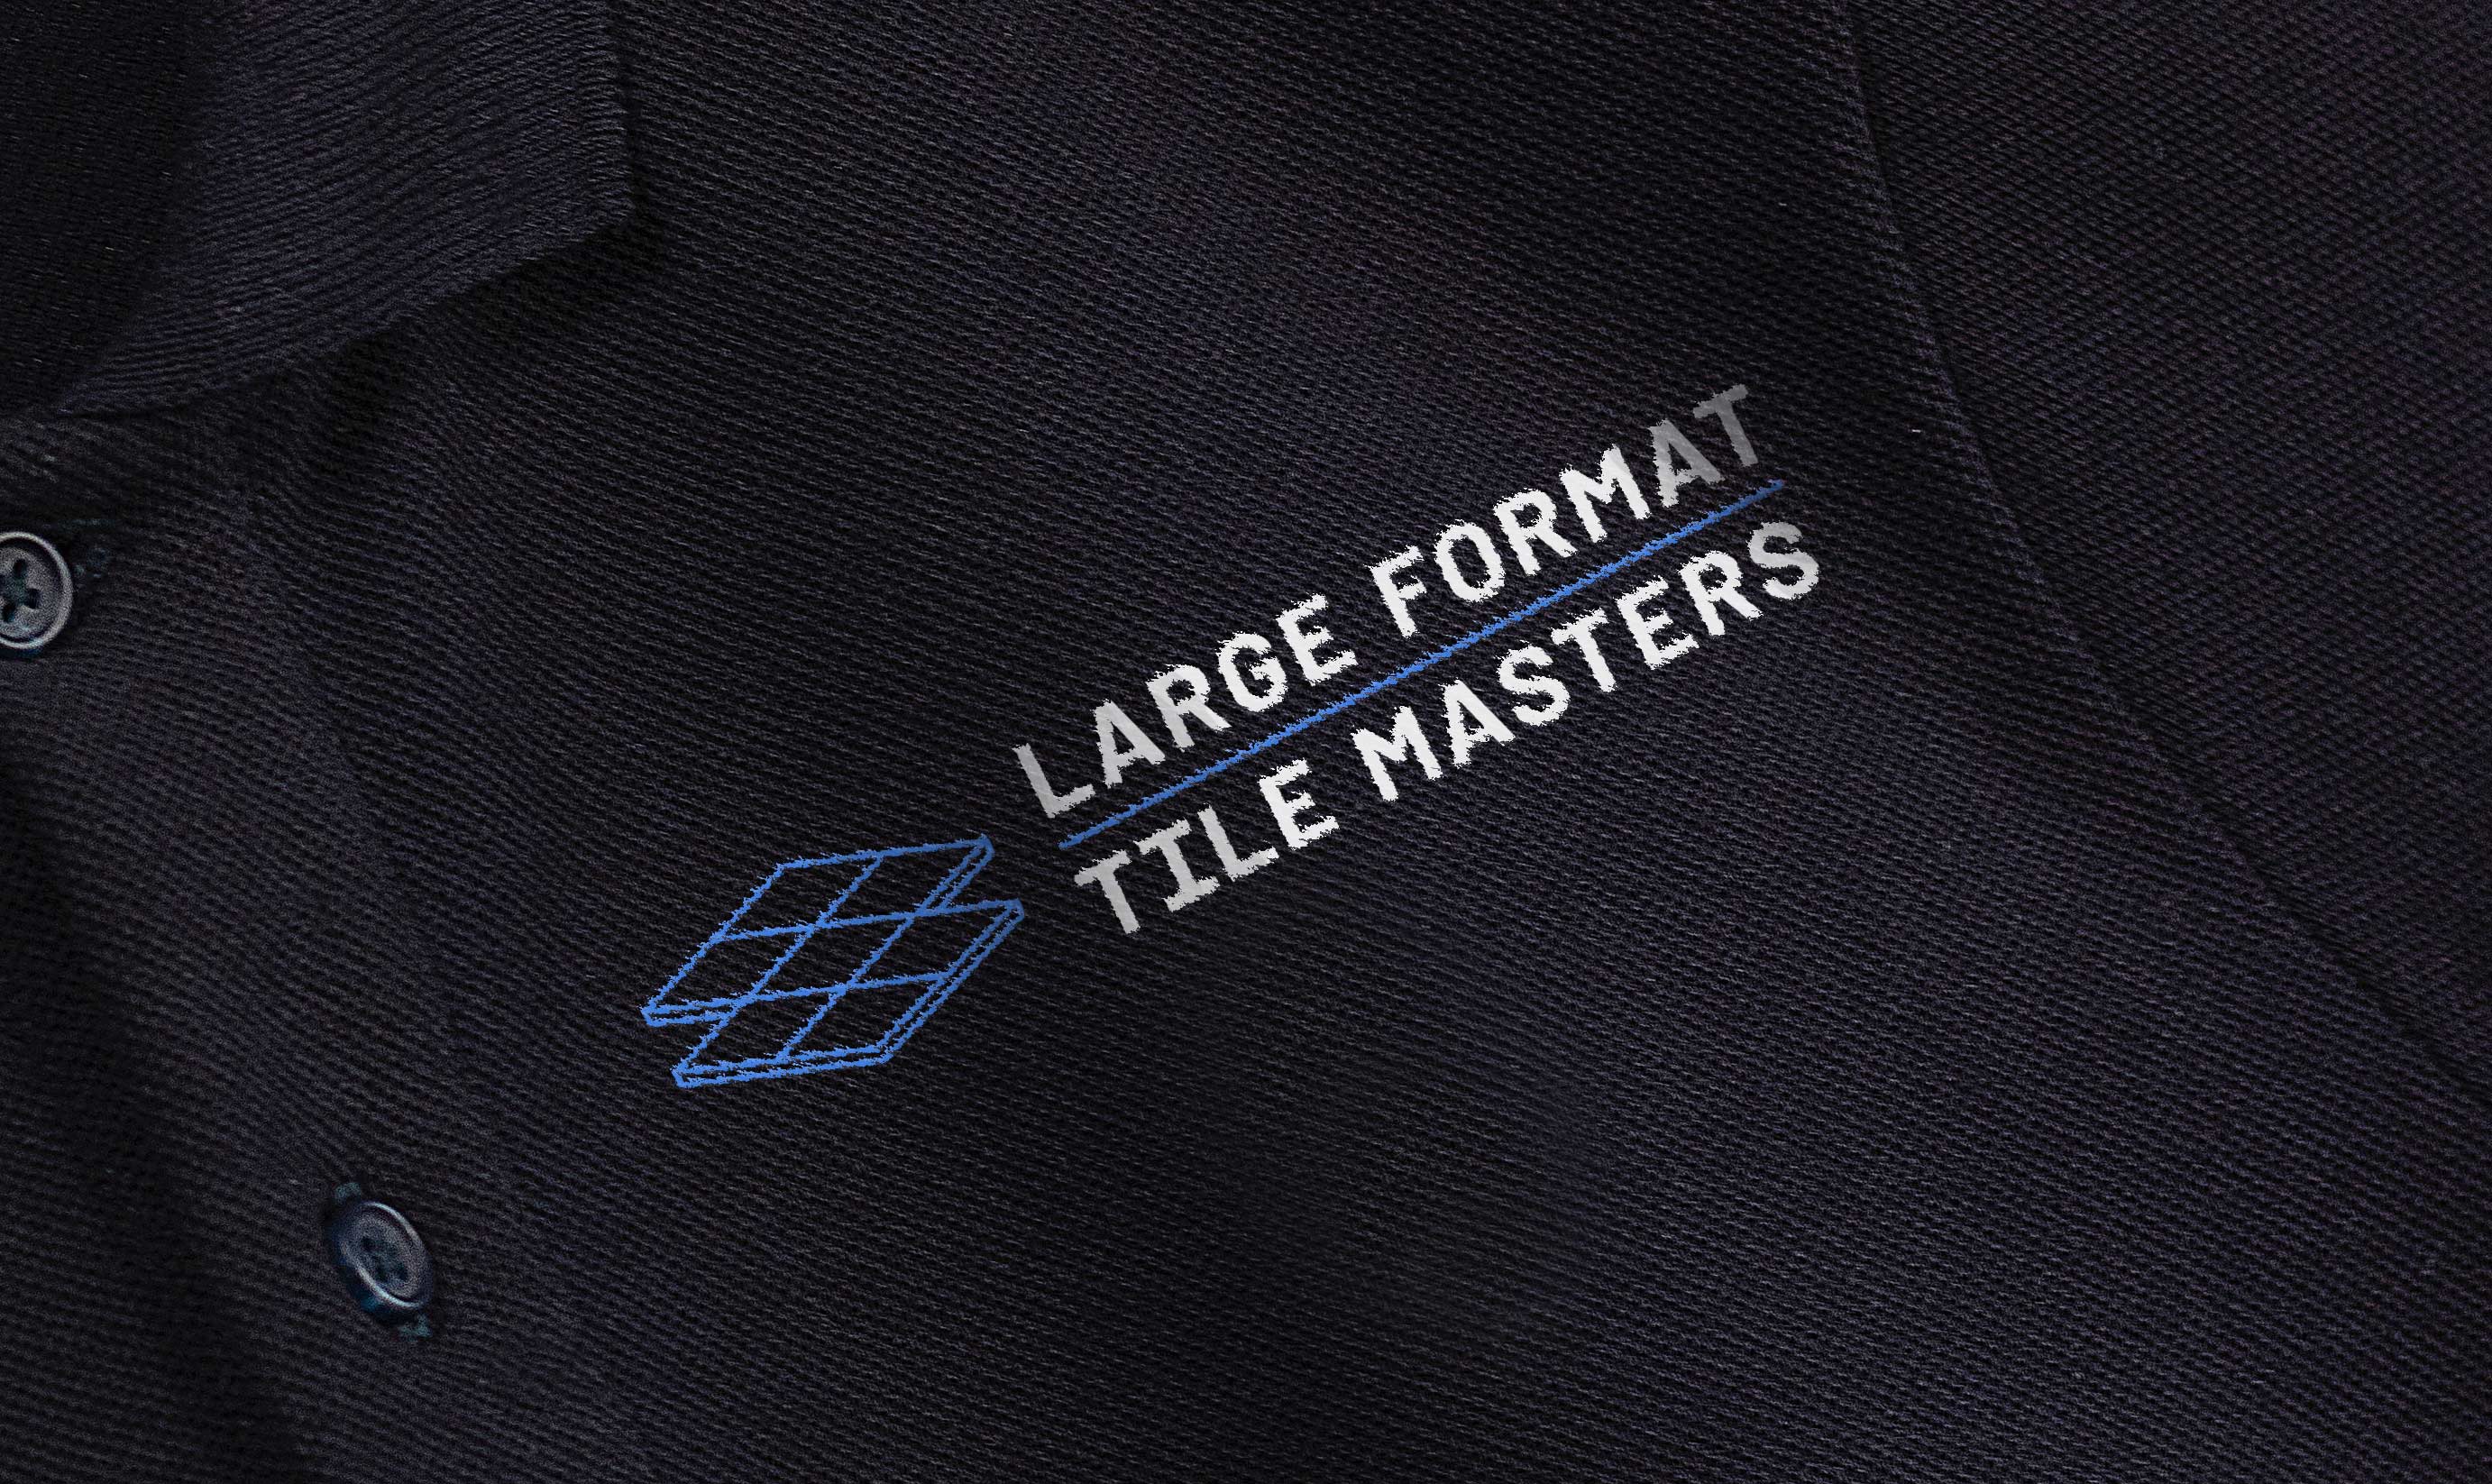 Tile Logo Design Embroidered on a Black Shirt